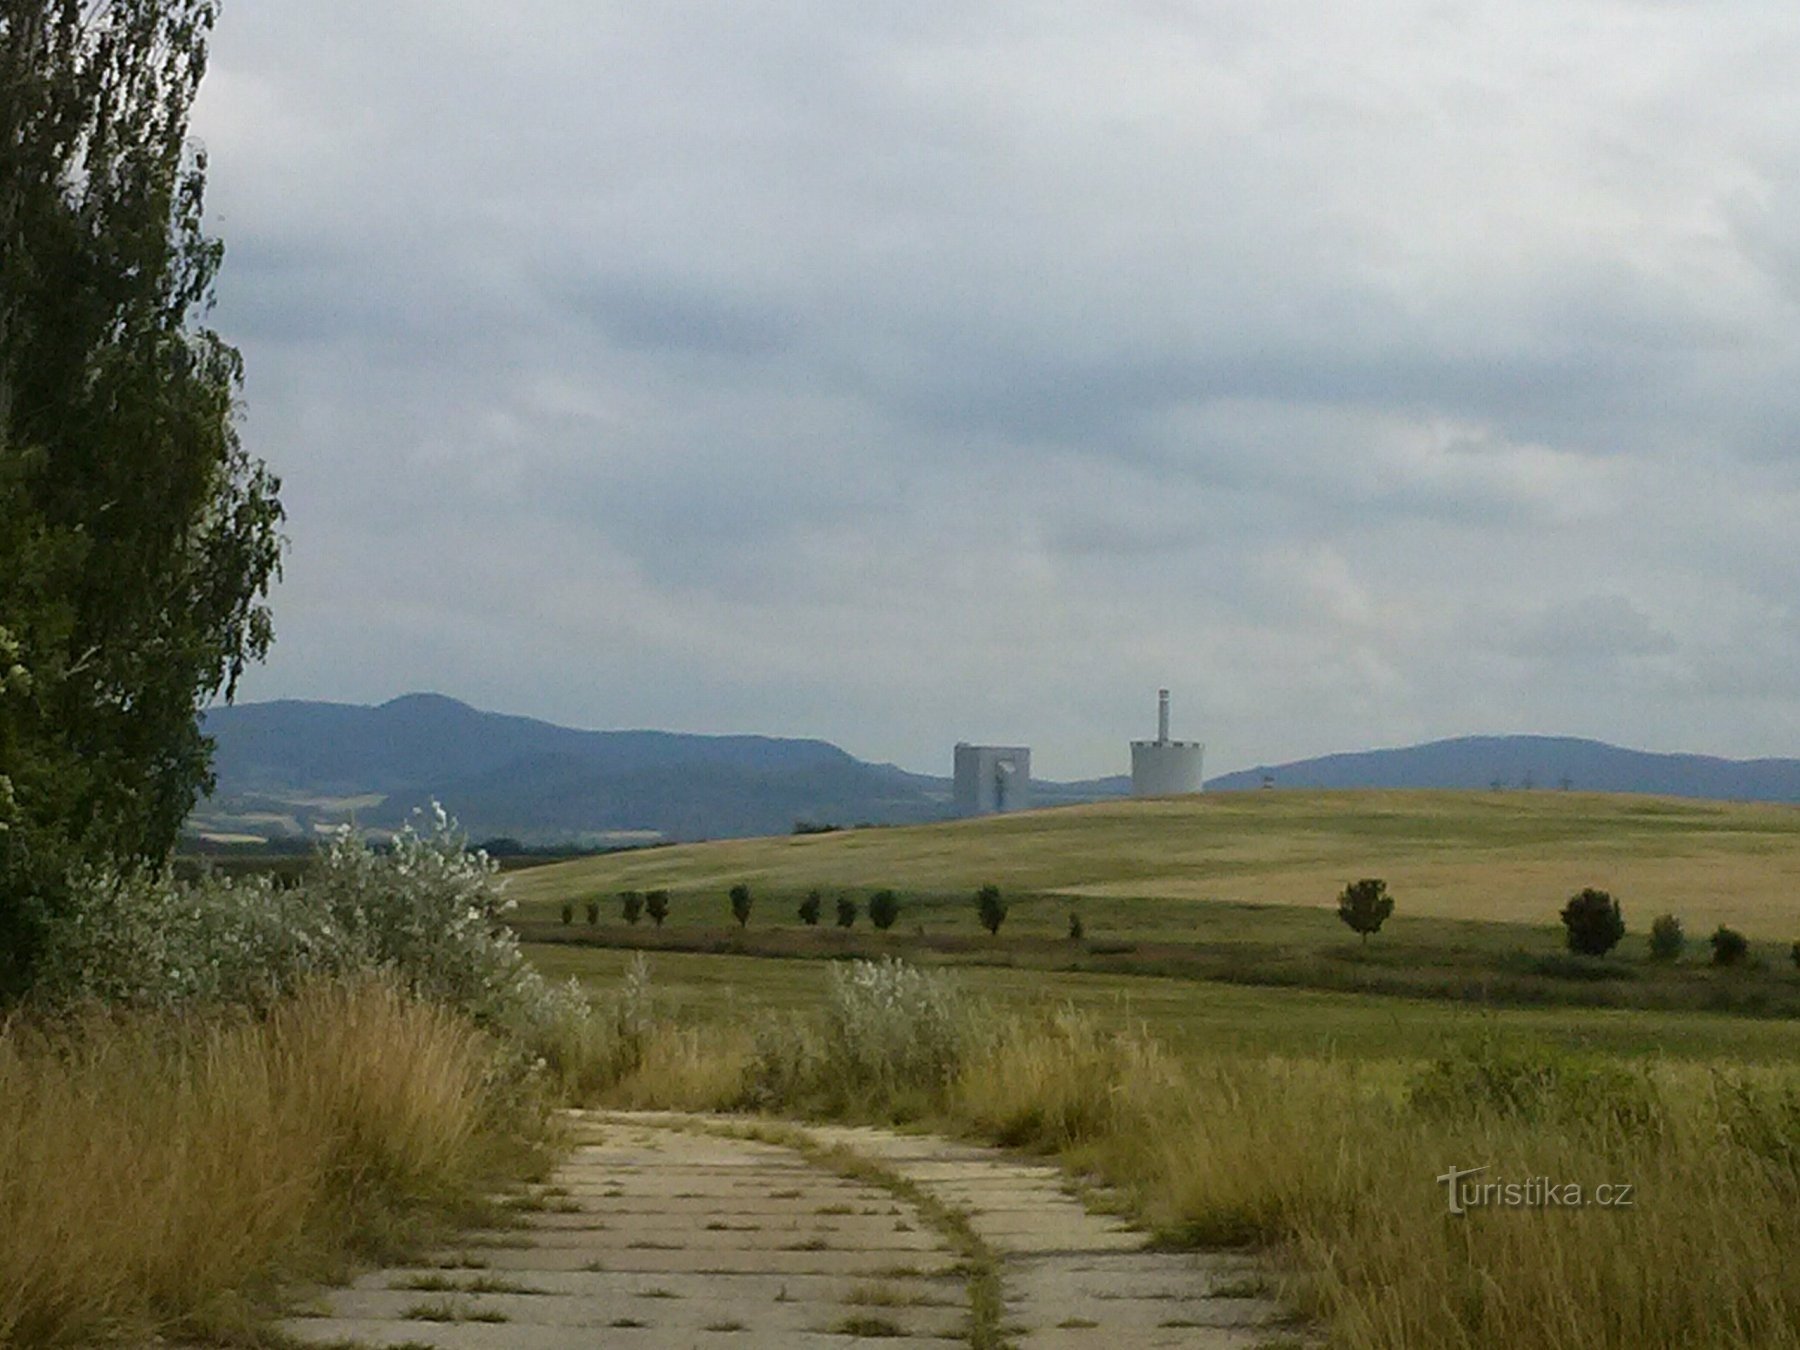 風景の眺め、チョチェヨヴィツェ発電所の塔がのぞく